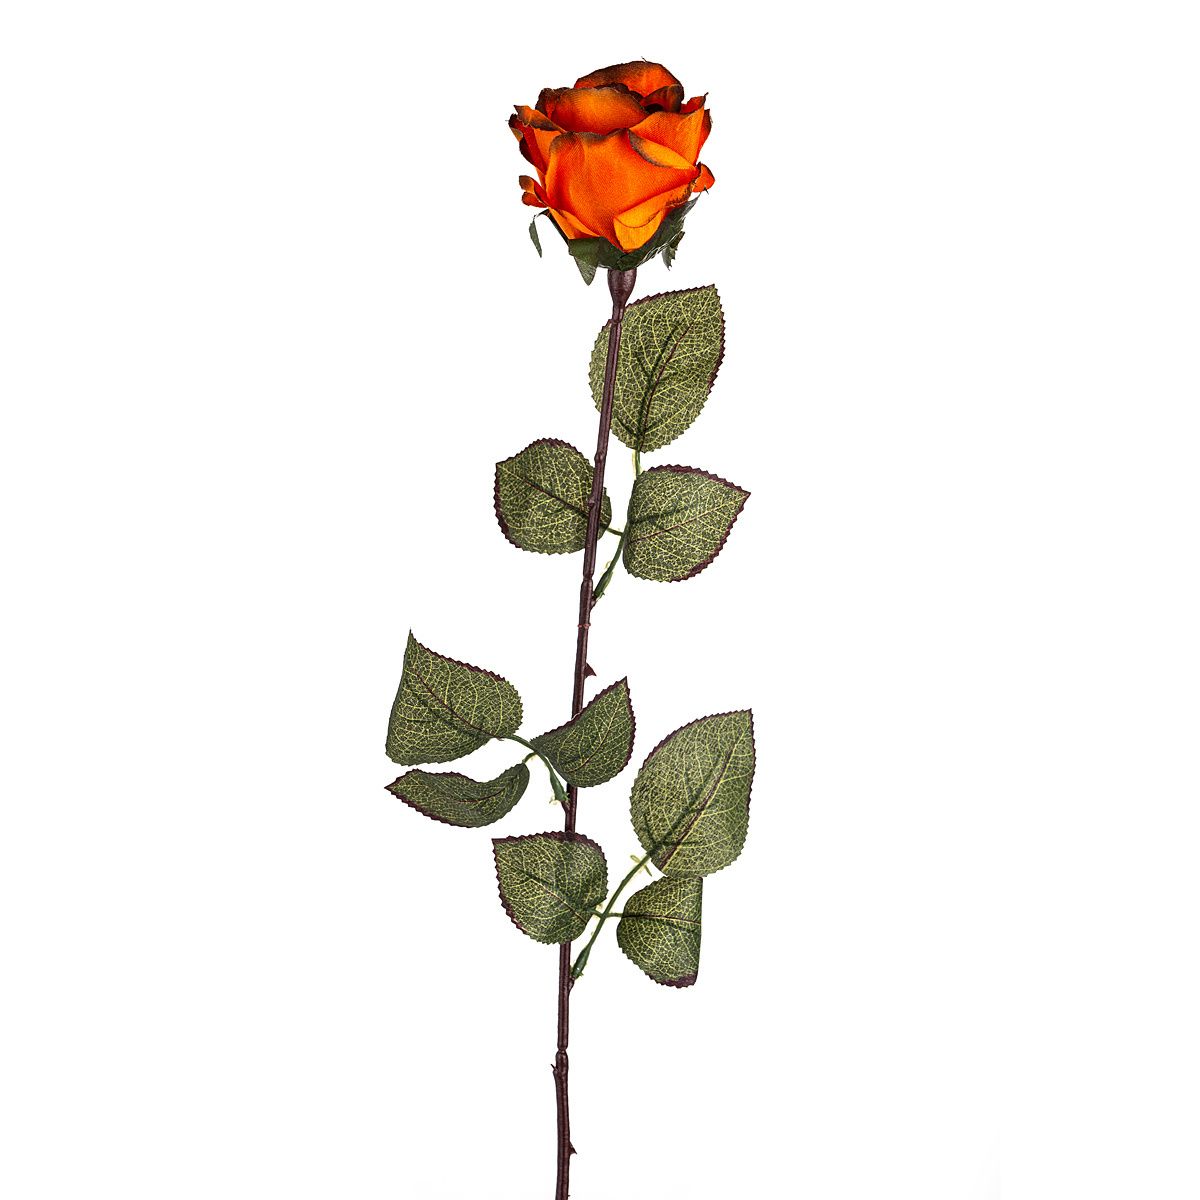 Umělá květina Růže velkokvětá 72 cm, tm. oranžová - 4home.cz